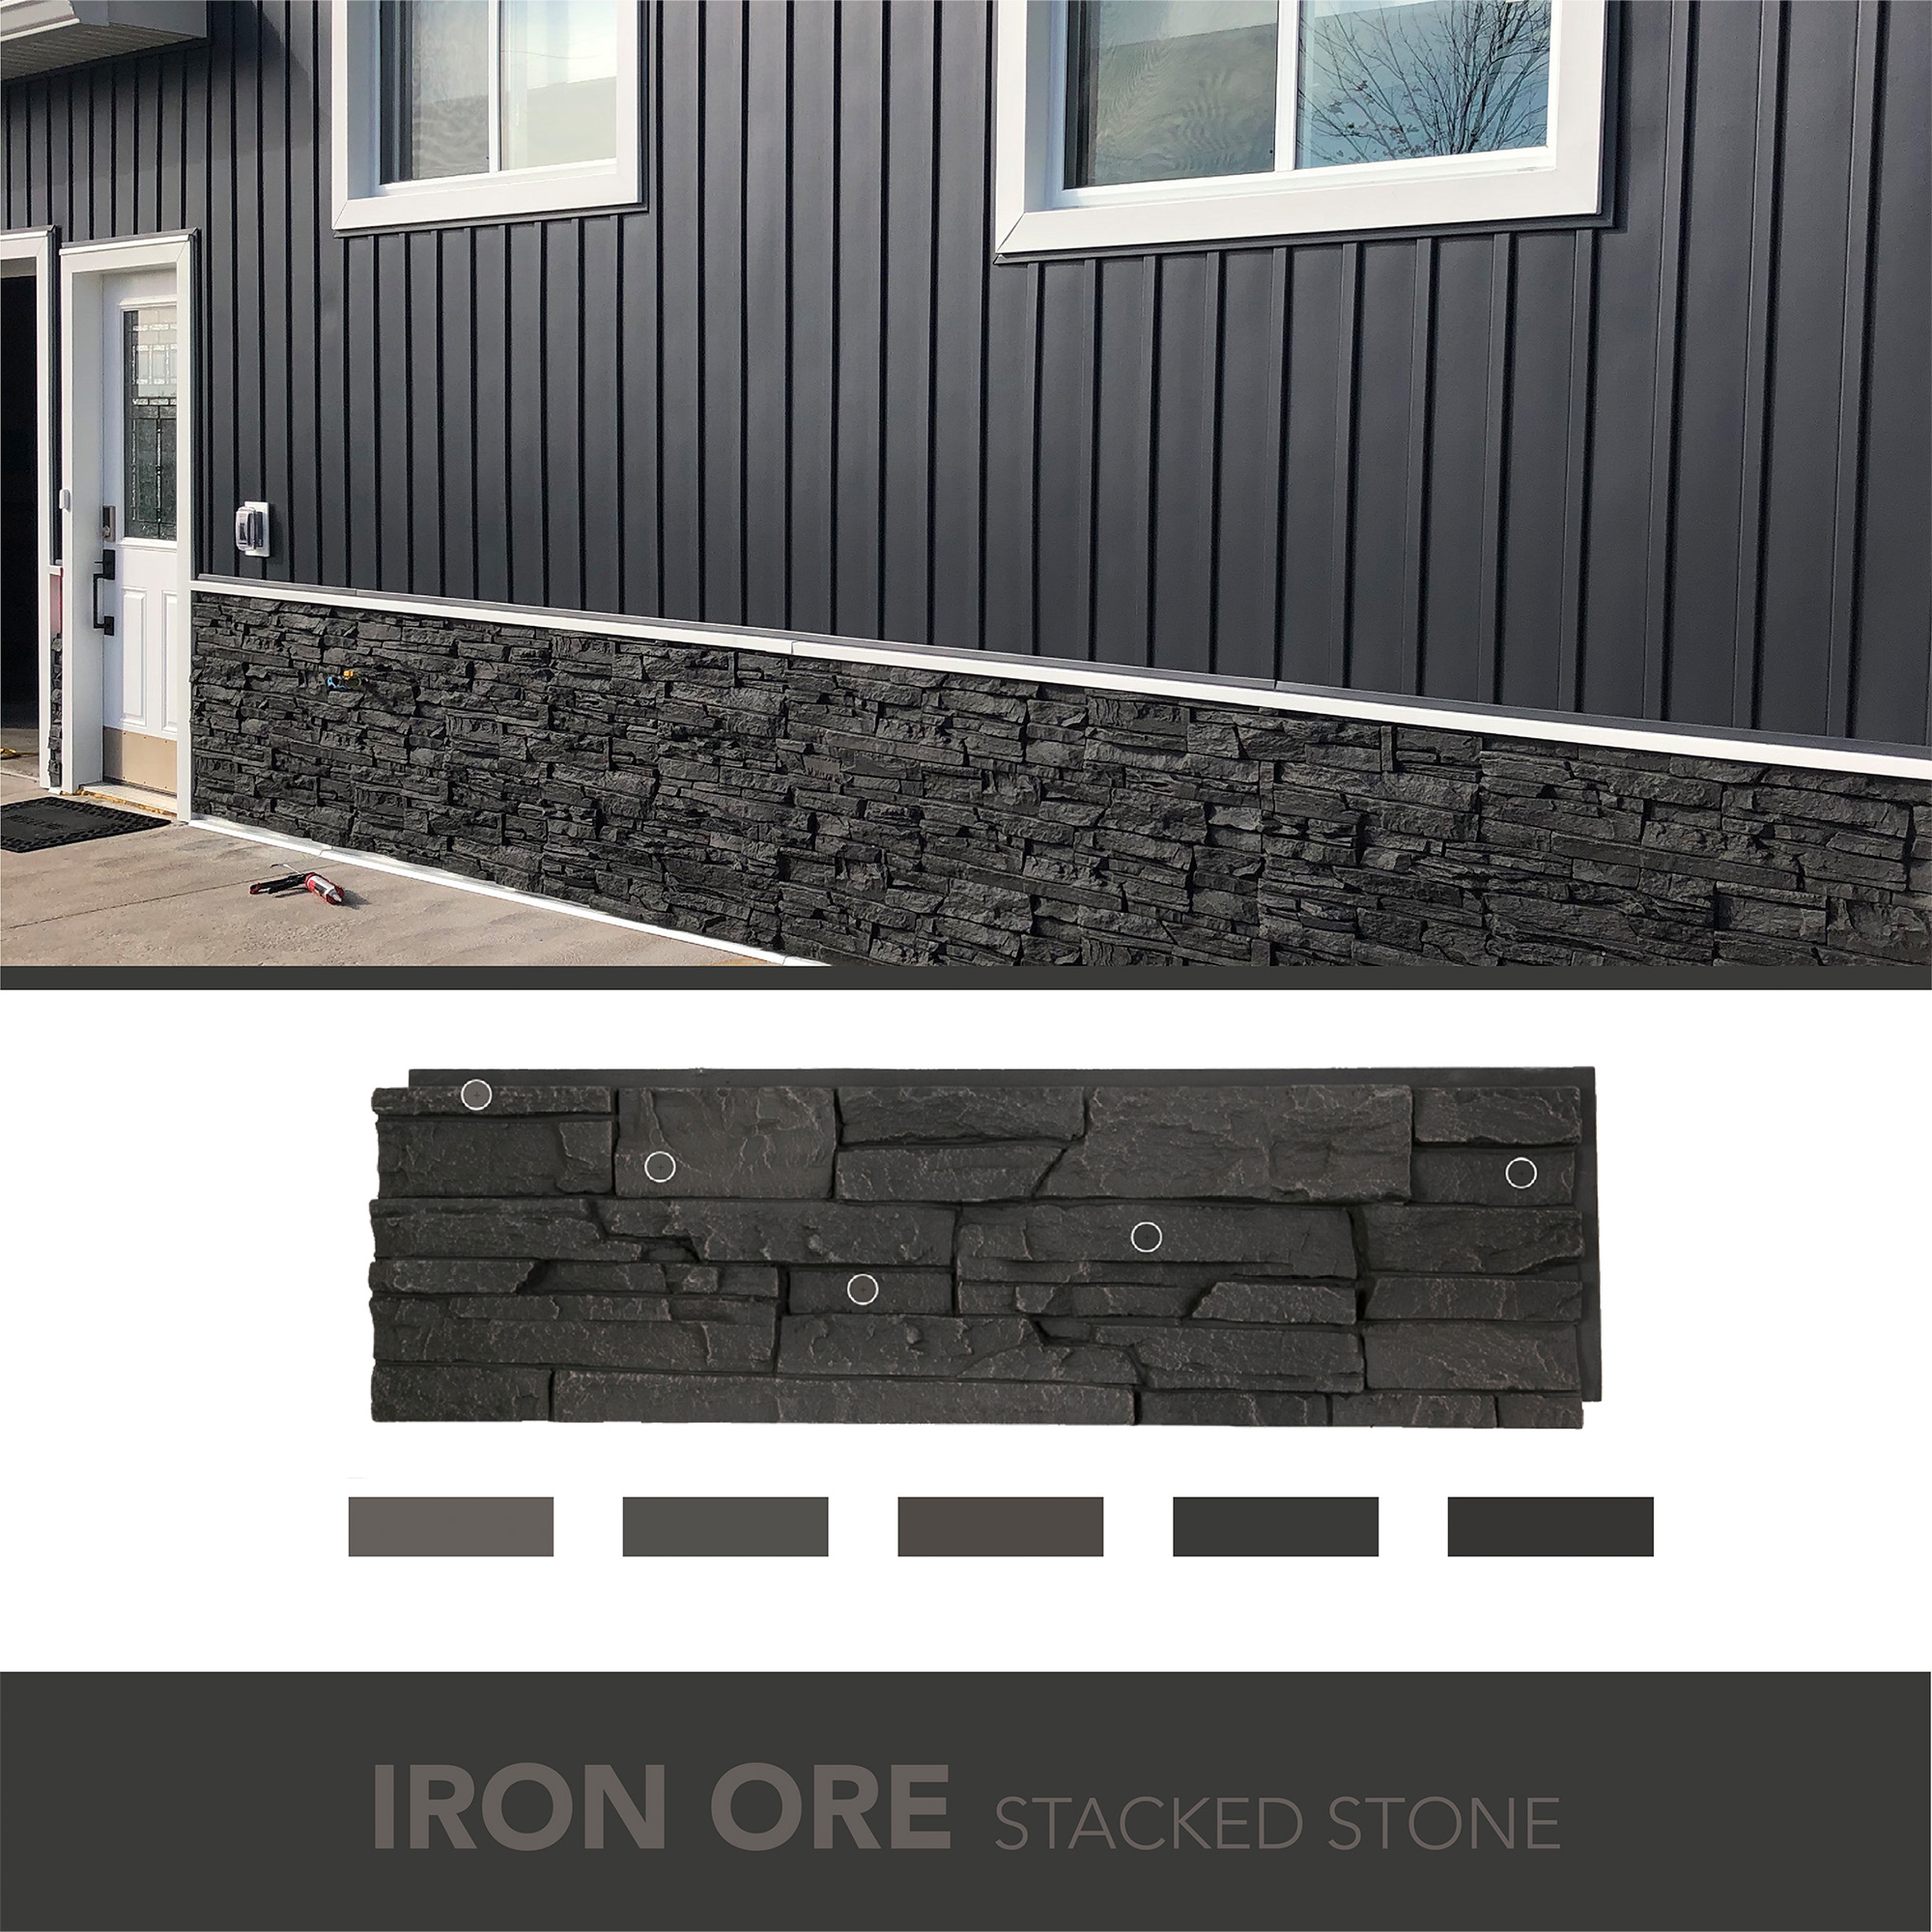 Discover GenStone Iron Ore